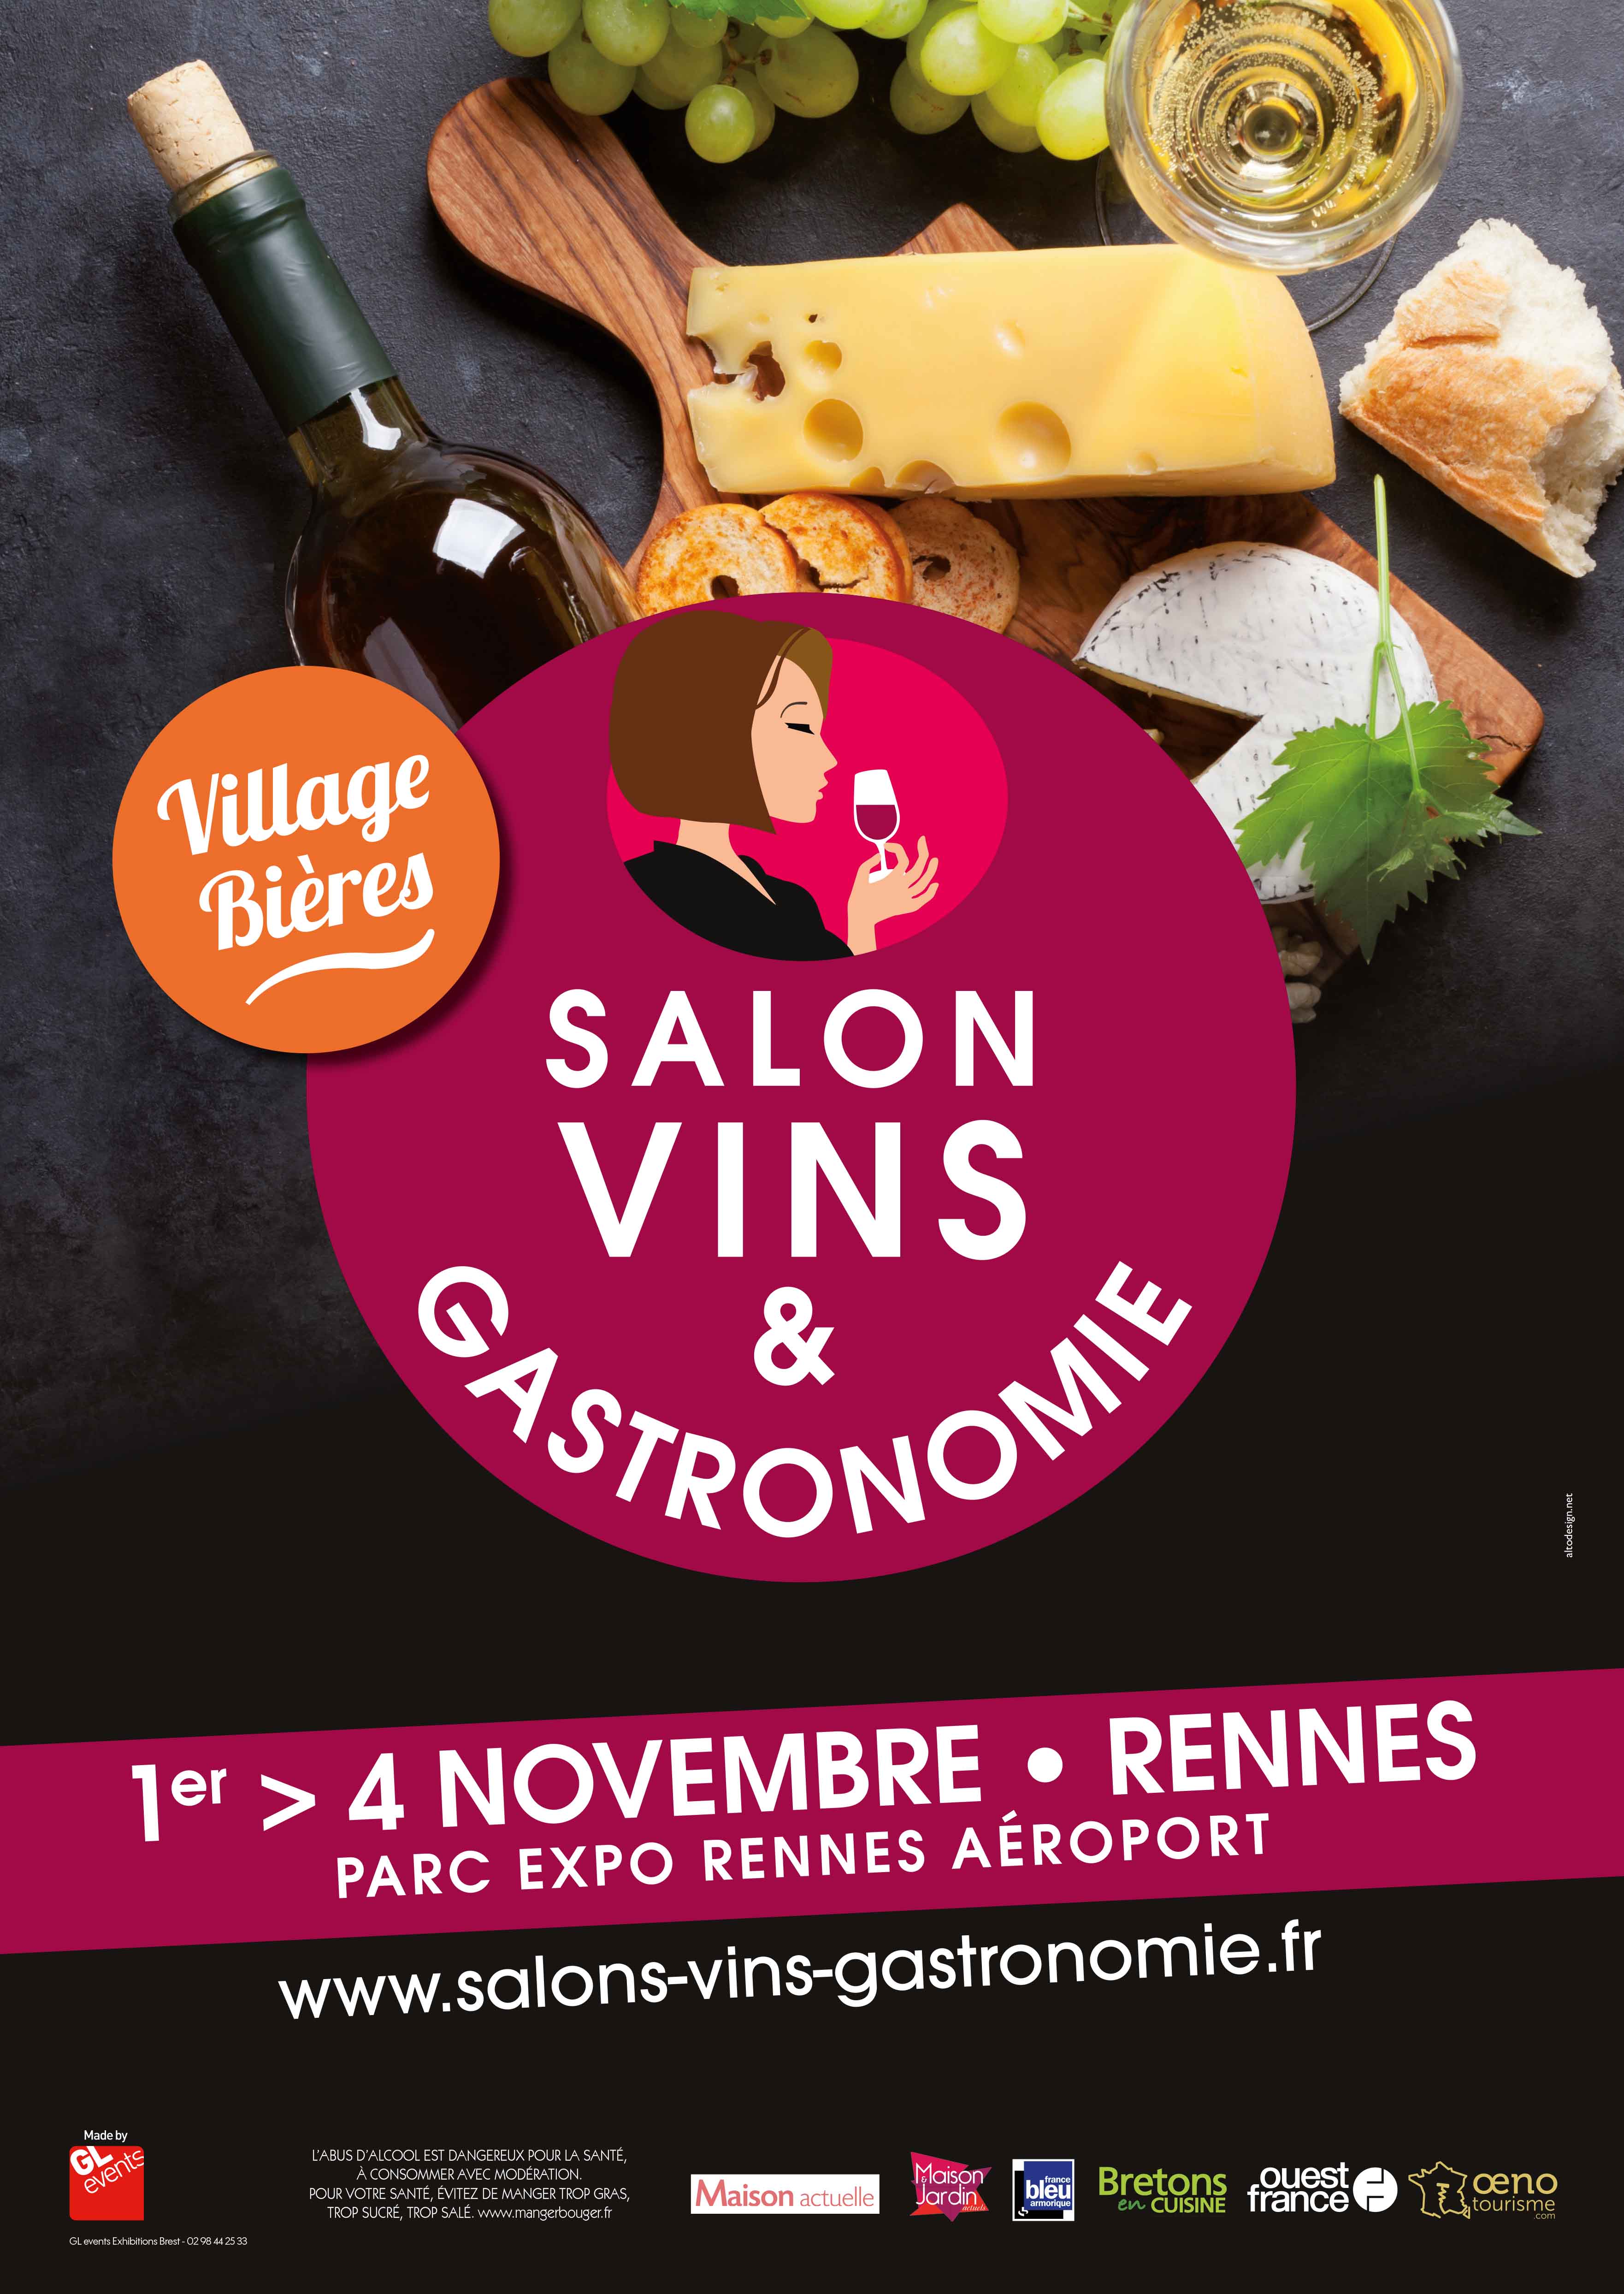 Le Salon Vins et Gastronomie de Rennes: du 1er au 4 novembre 2018